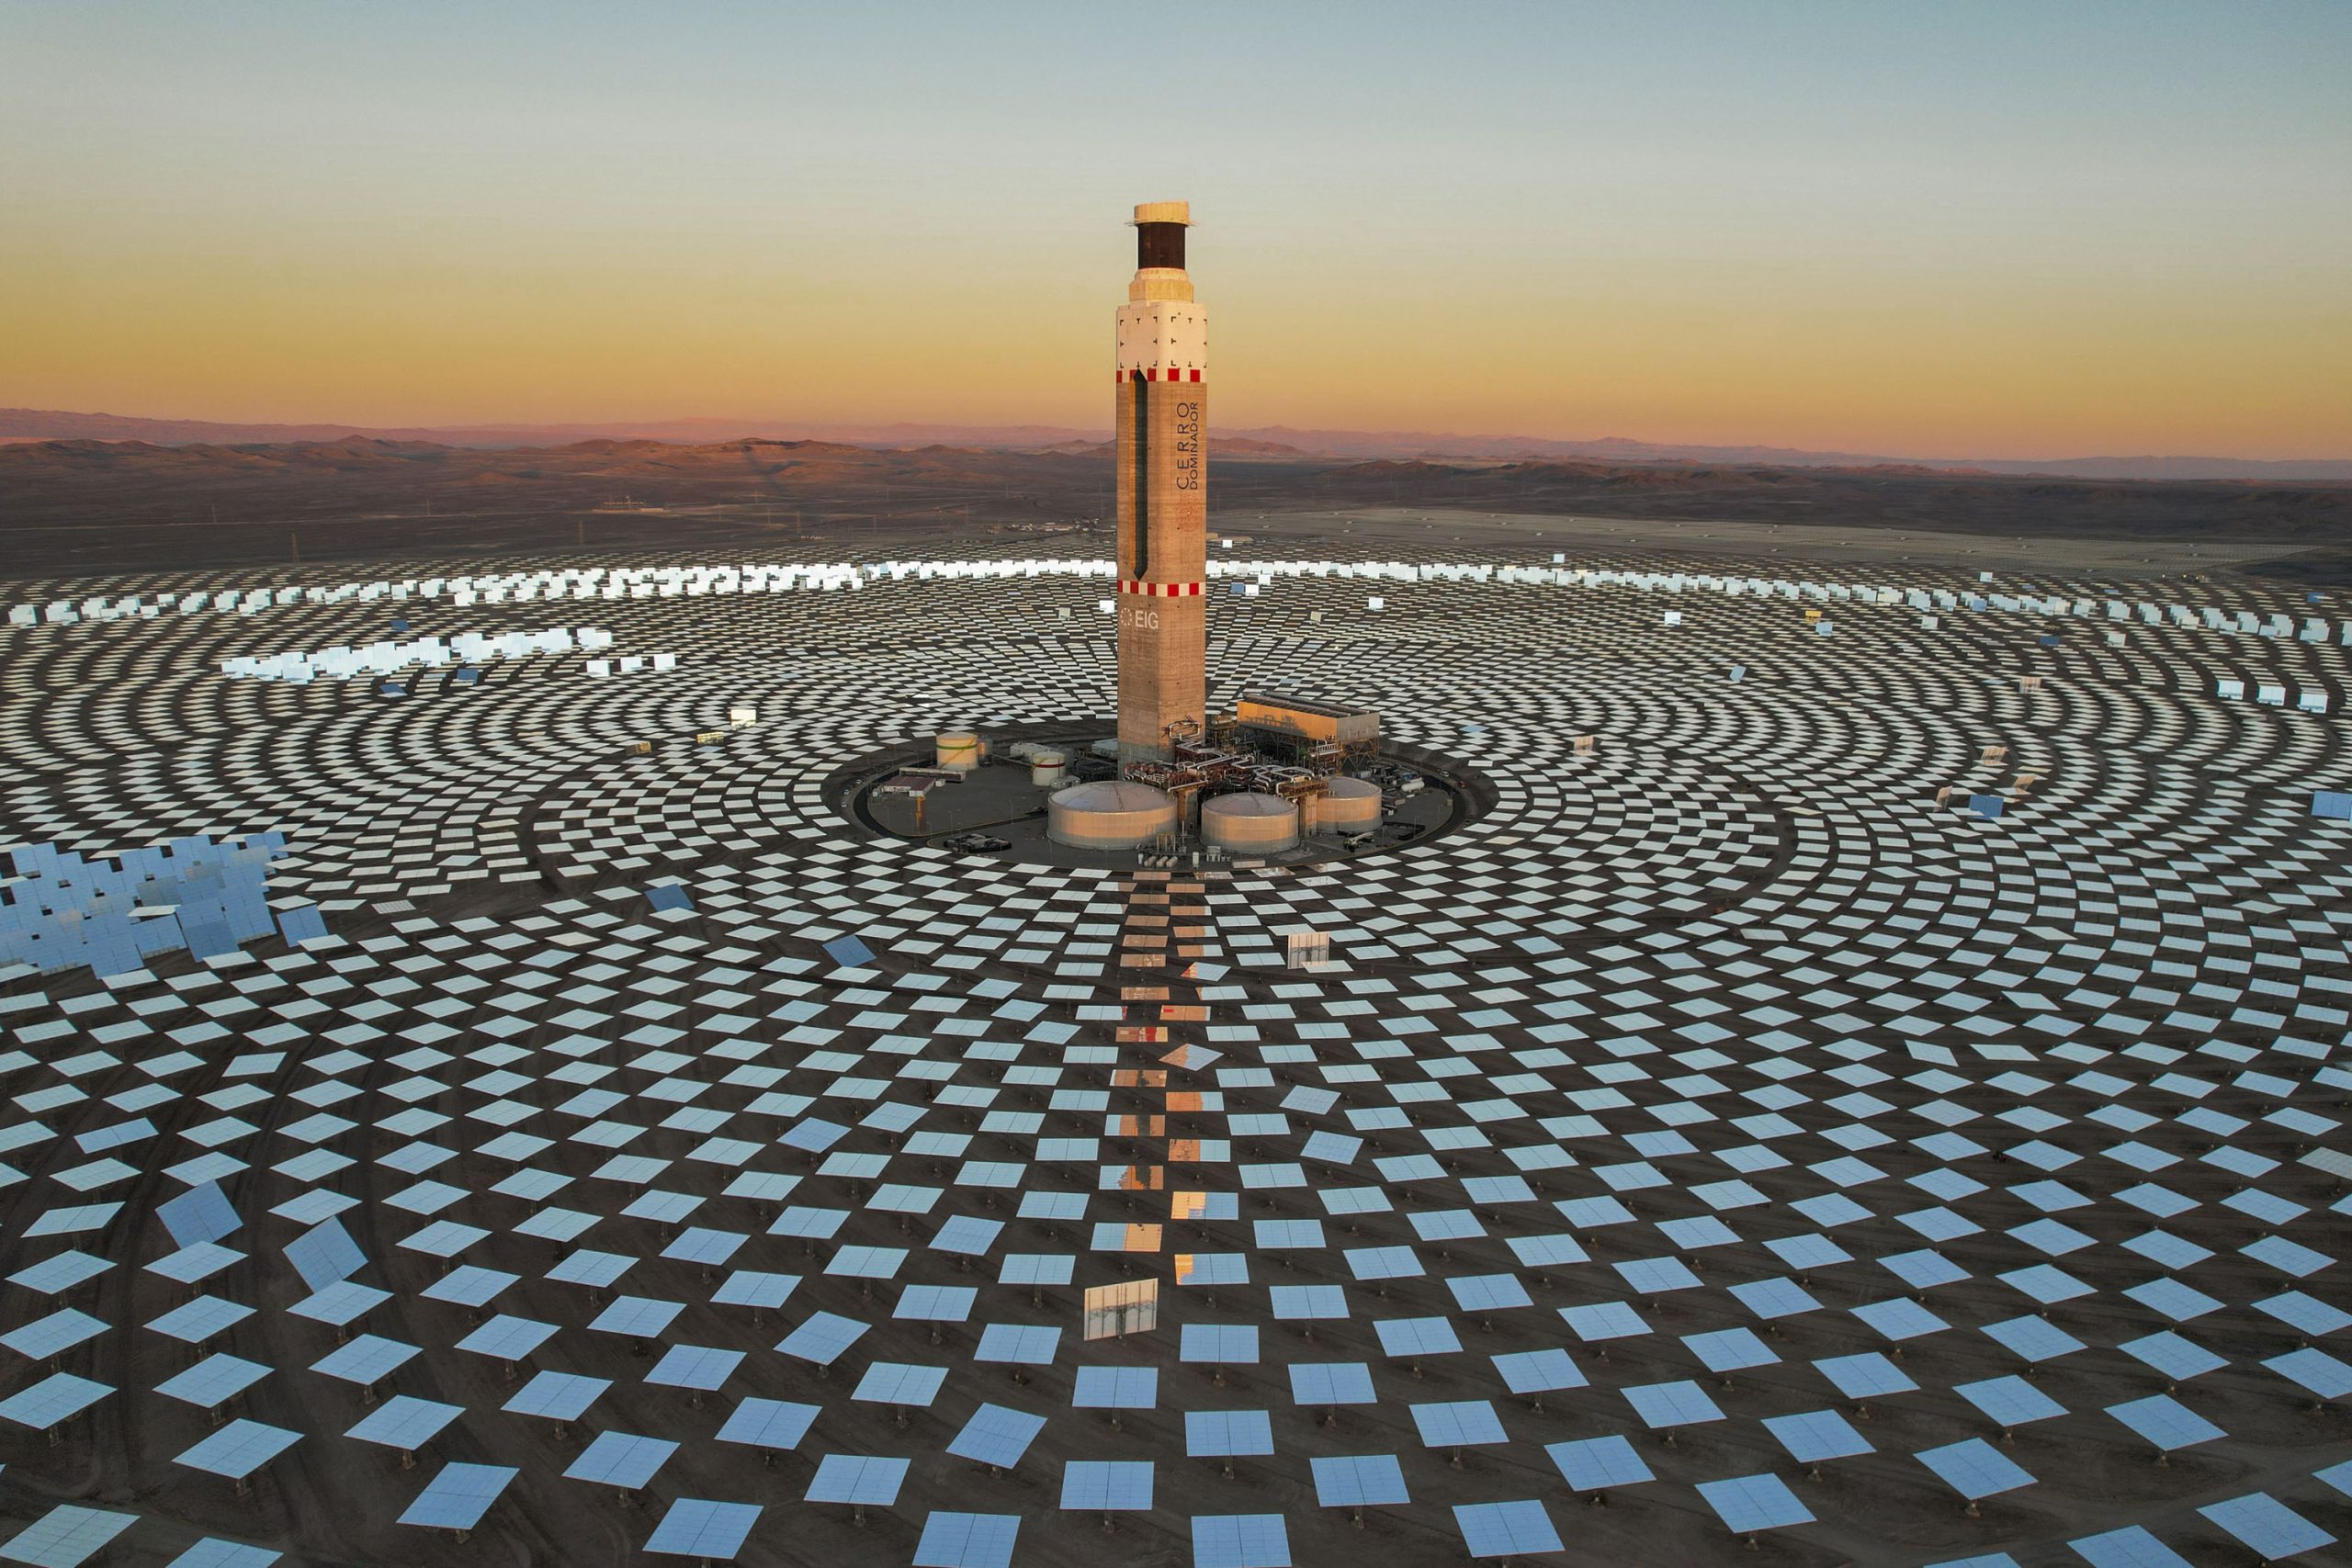 <p>La planta solar Cerro Dominador, en el desierto de Atacama, en el norte de Chile. La región de Atacama recibe uno de los niveles de radiación solar más altos del mundo y es una parte central de la expansión de la energía solar en Chile (Imagen: <a href="https://flic.kr/p/2mb7XSz">Tamara Merino</a> / <a href="https://flickr.com/people/imfphoto/">International Monetary Fund</a>, <a href="https://creativecommons.org/licenses/by-nc-nd/2.0/">CC BY-NC-ND</a>)</p>